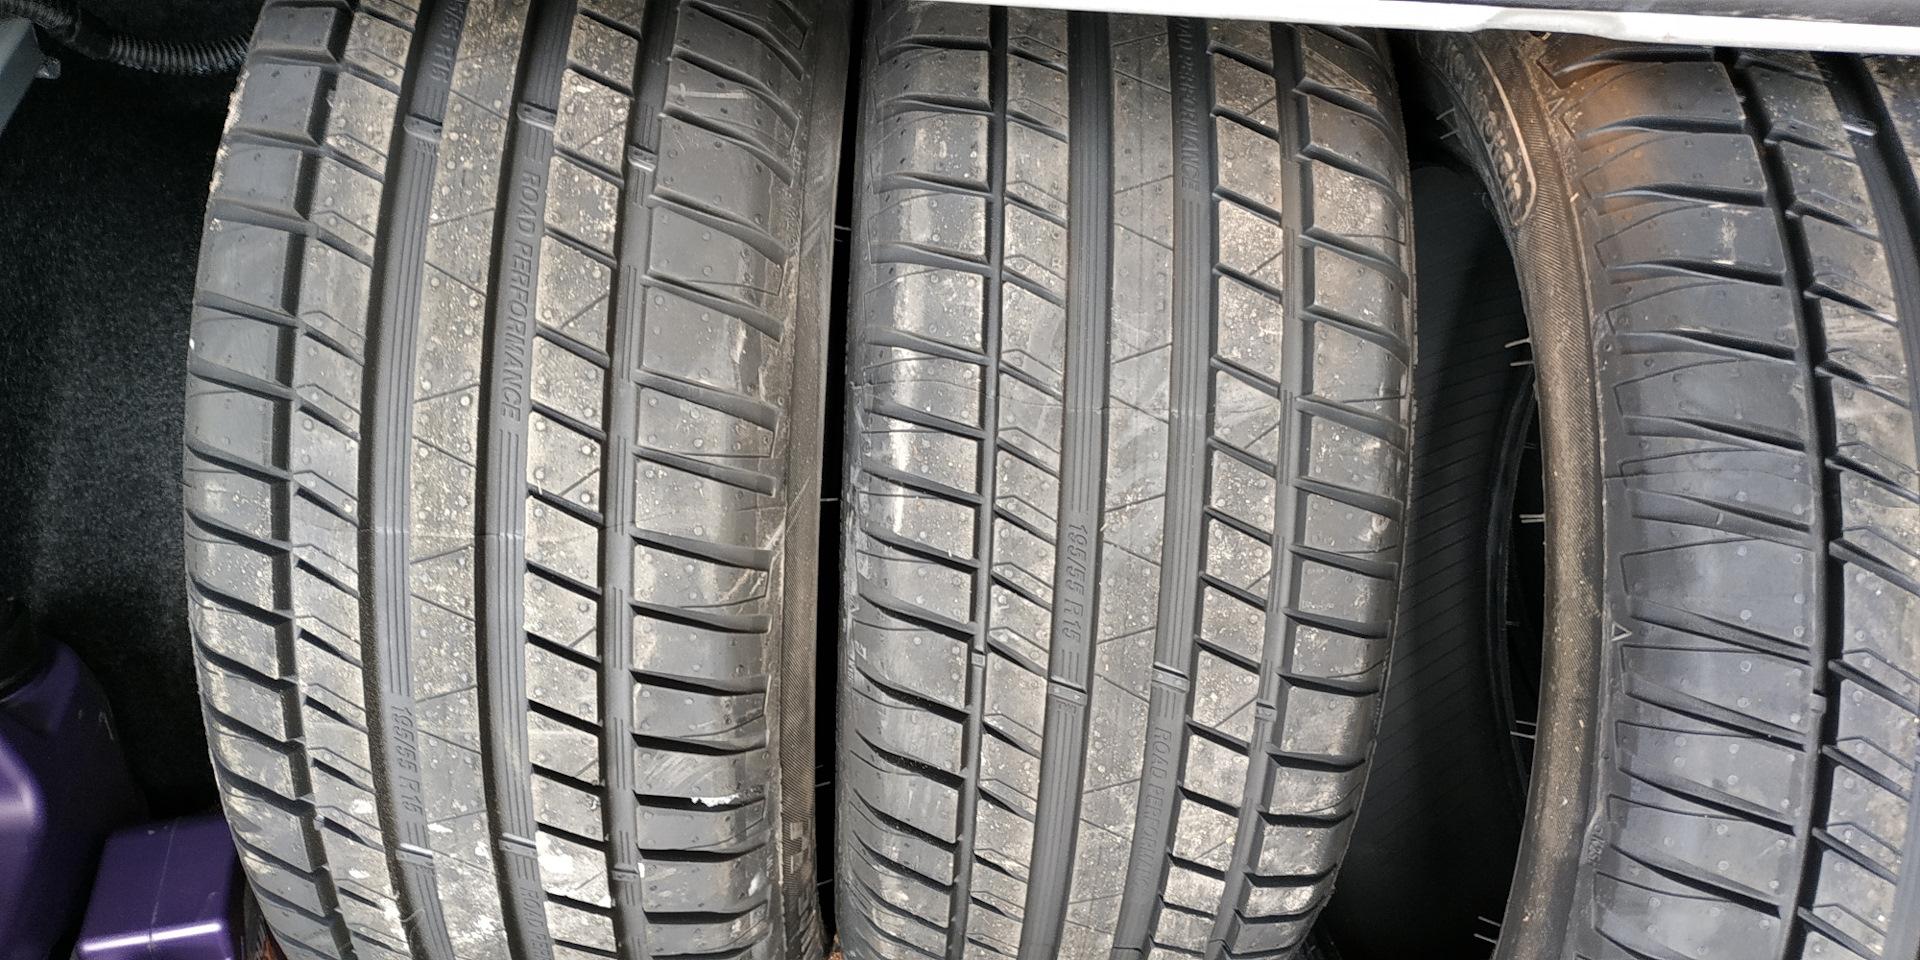 Analisi dei pro e contro degli pneumatici estivi "Kormoran Gamma B2". Vale la pena acquistare, recensioni di proprietari di auto